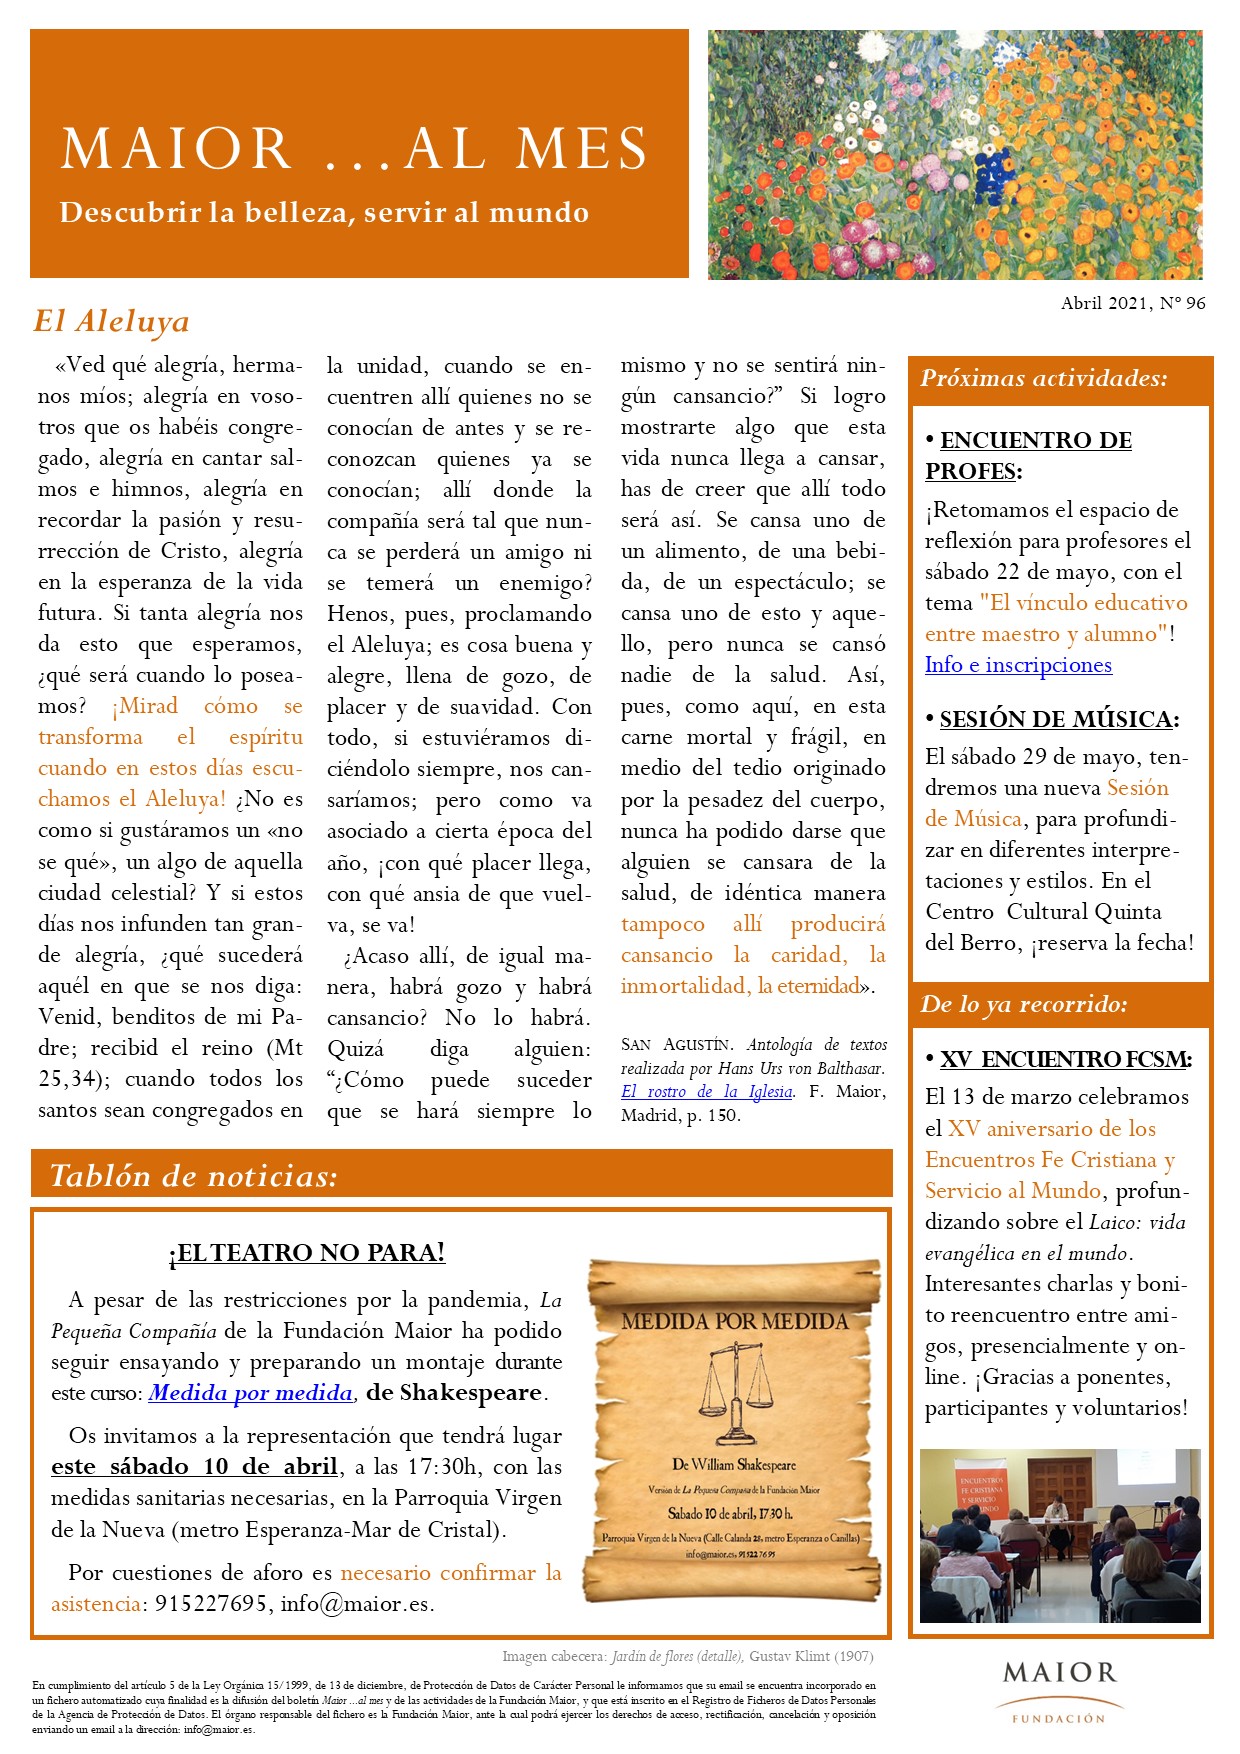 Boletín mensual de noticias y actividades de la Fundación Maior. Edición de abril 2021